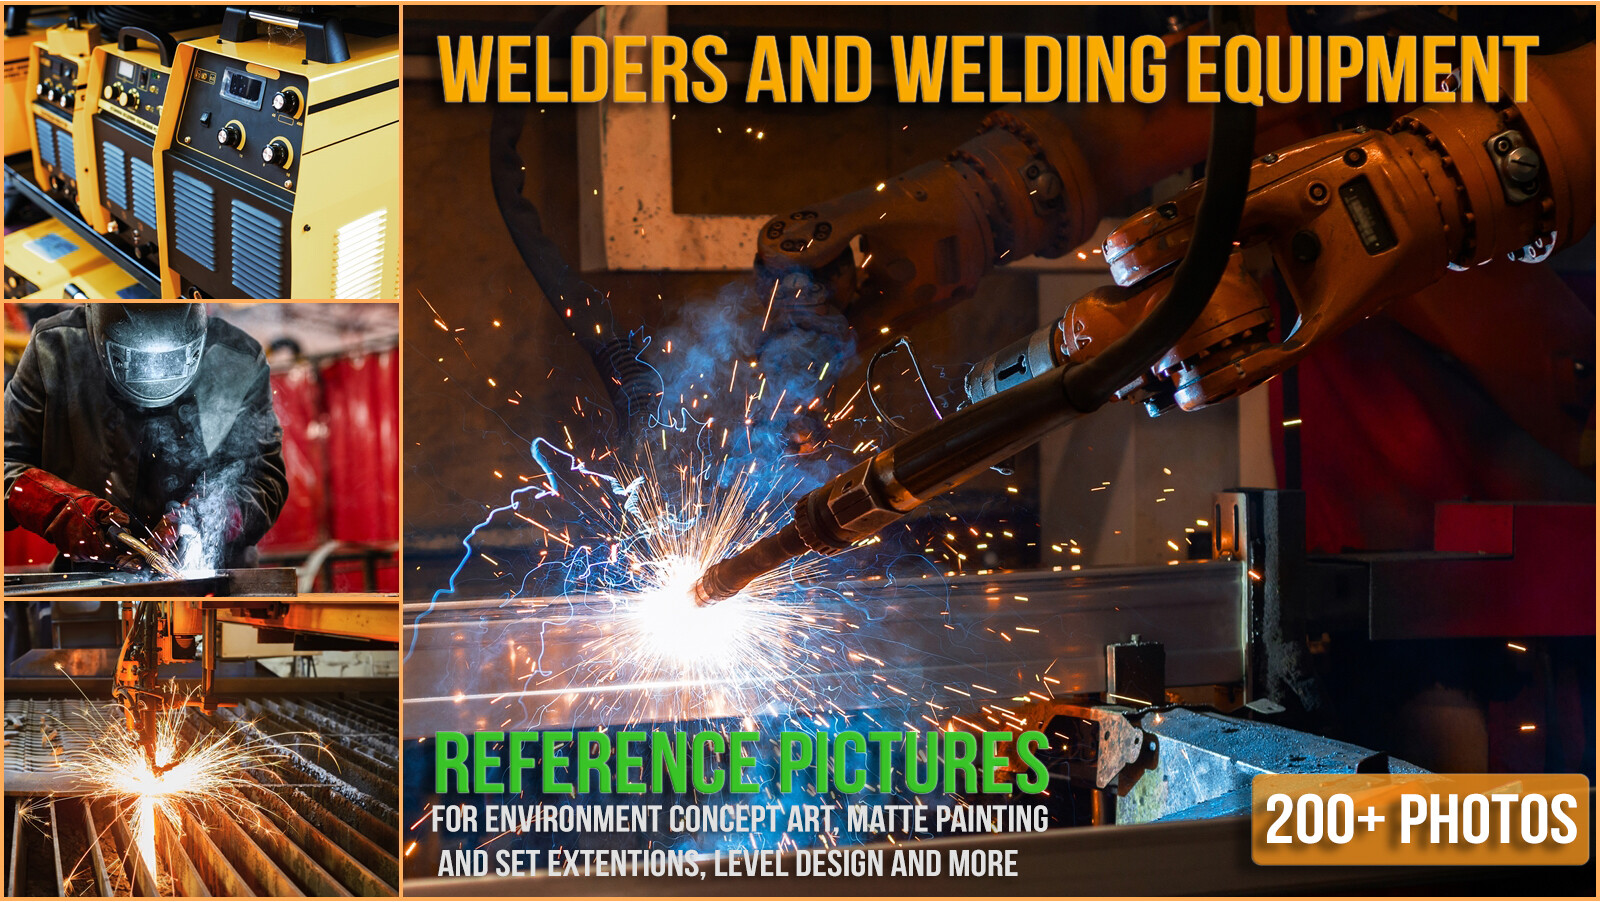 ArtStation - 200+ Photo Welders and welding equipment | Resources